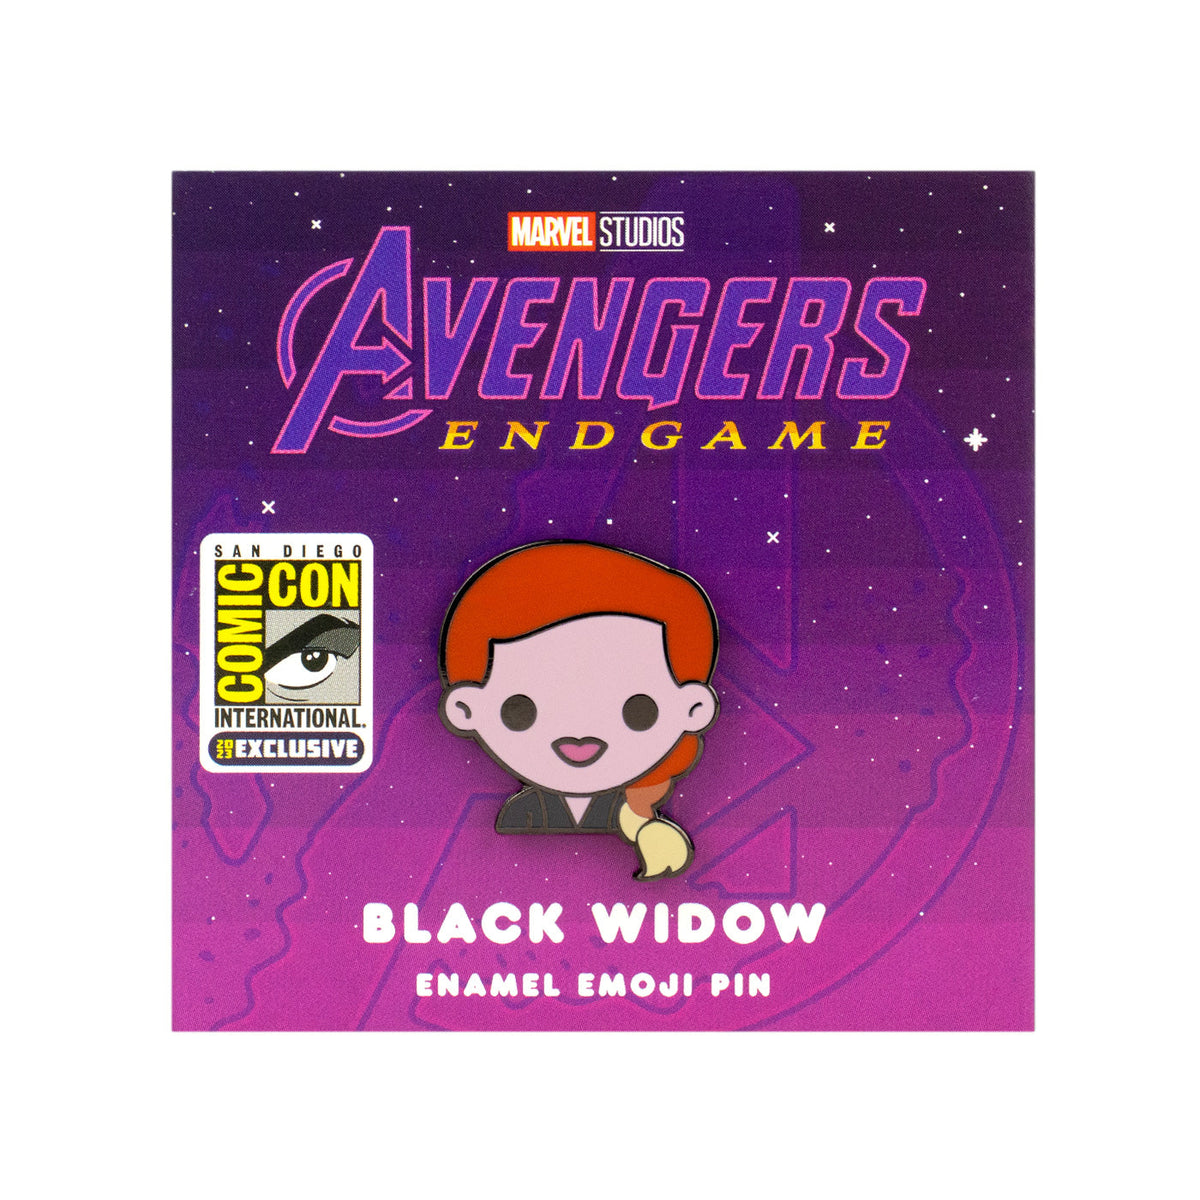 Black Widow (Endgame) Enamel Pin